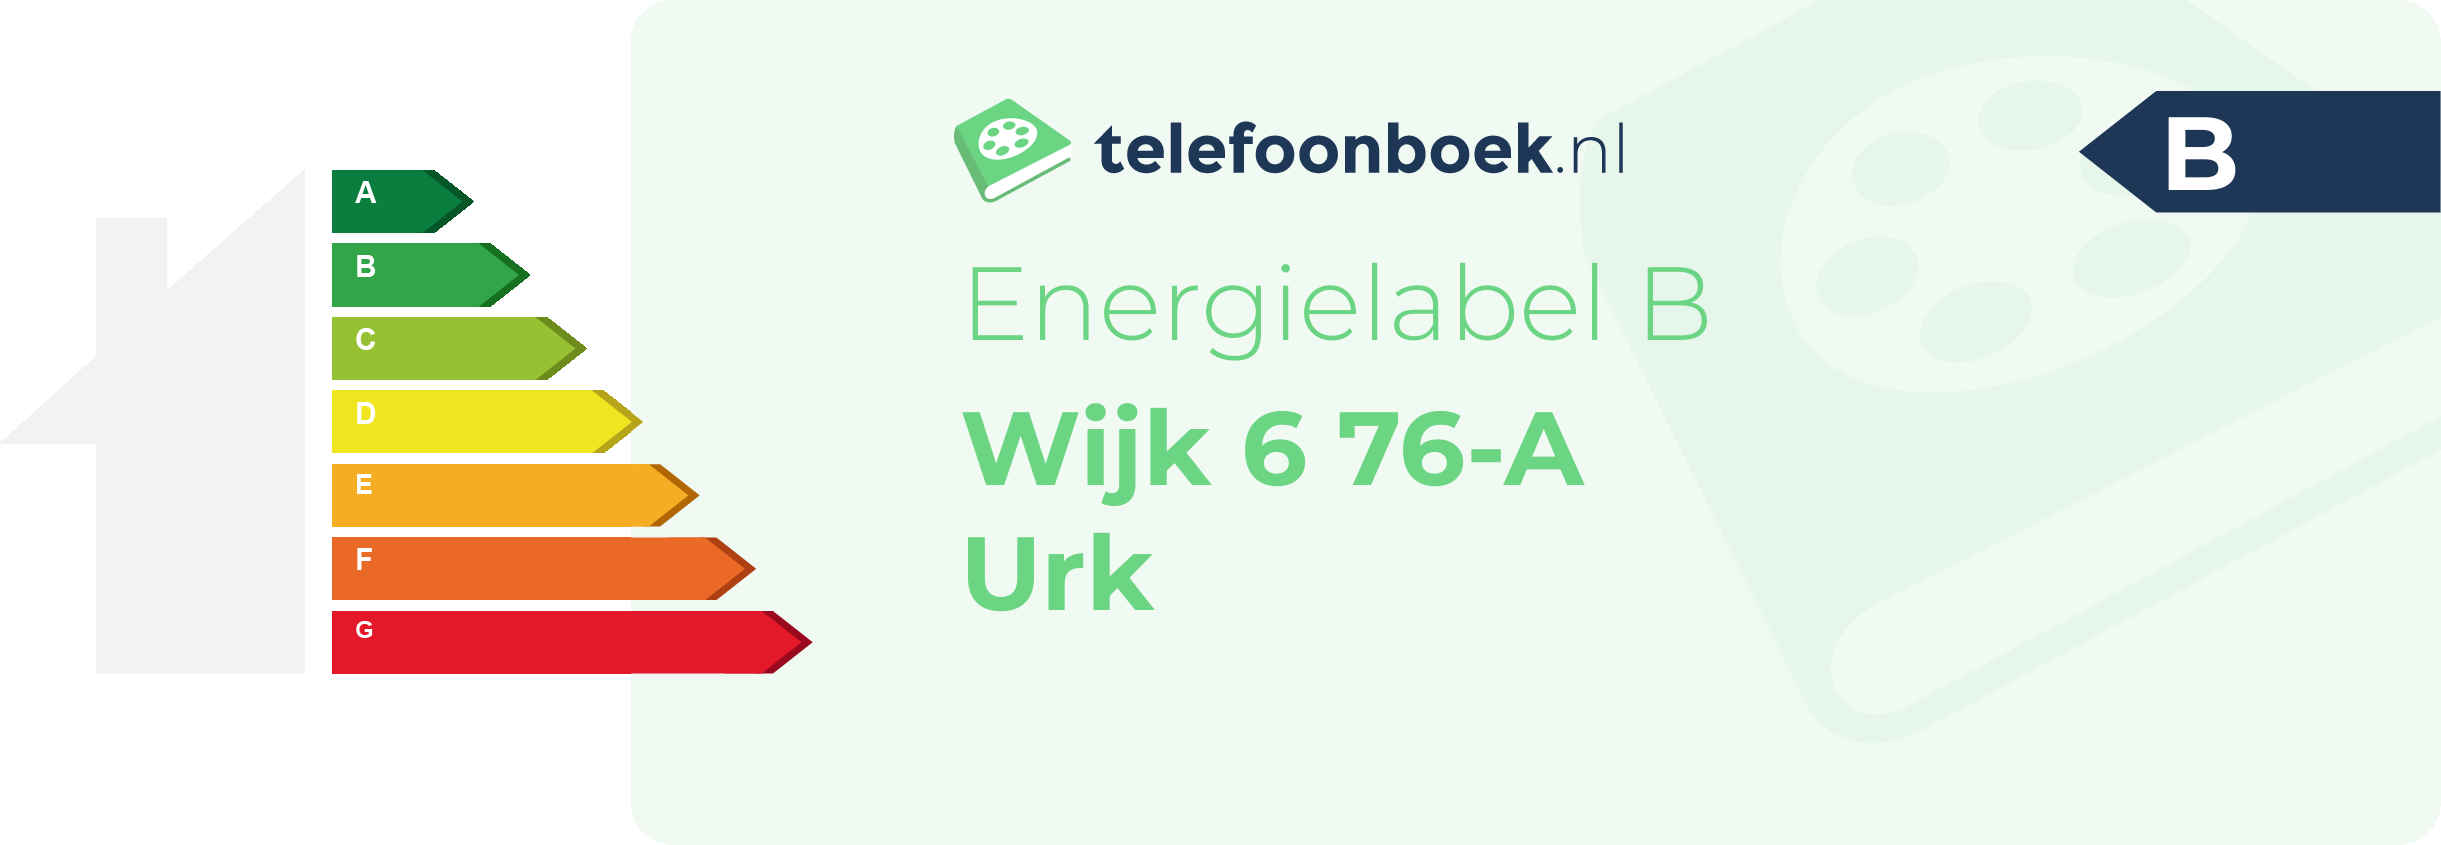 Energielabel Wijk 6 76-A Urk